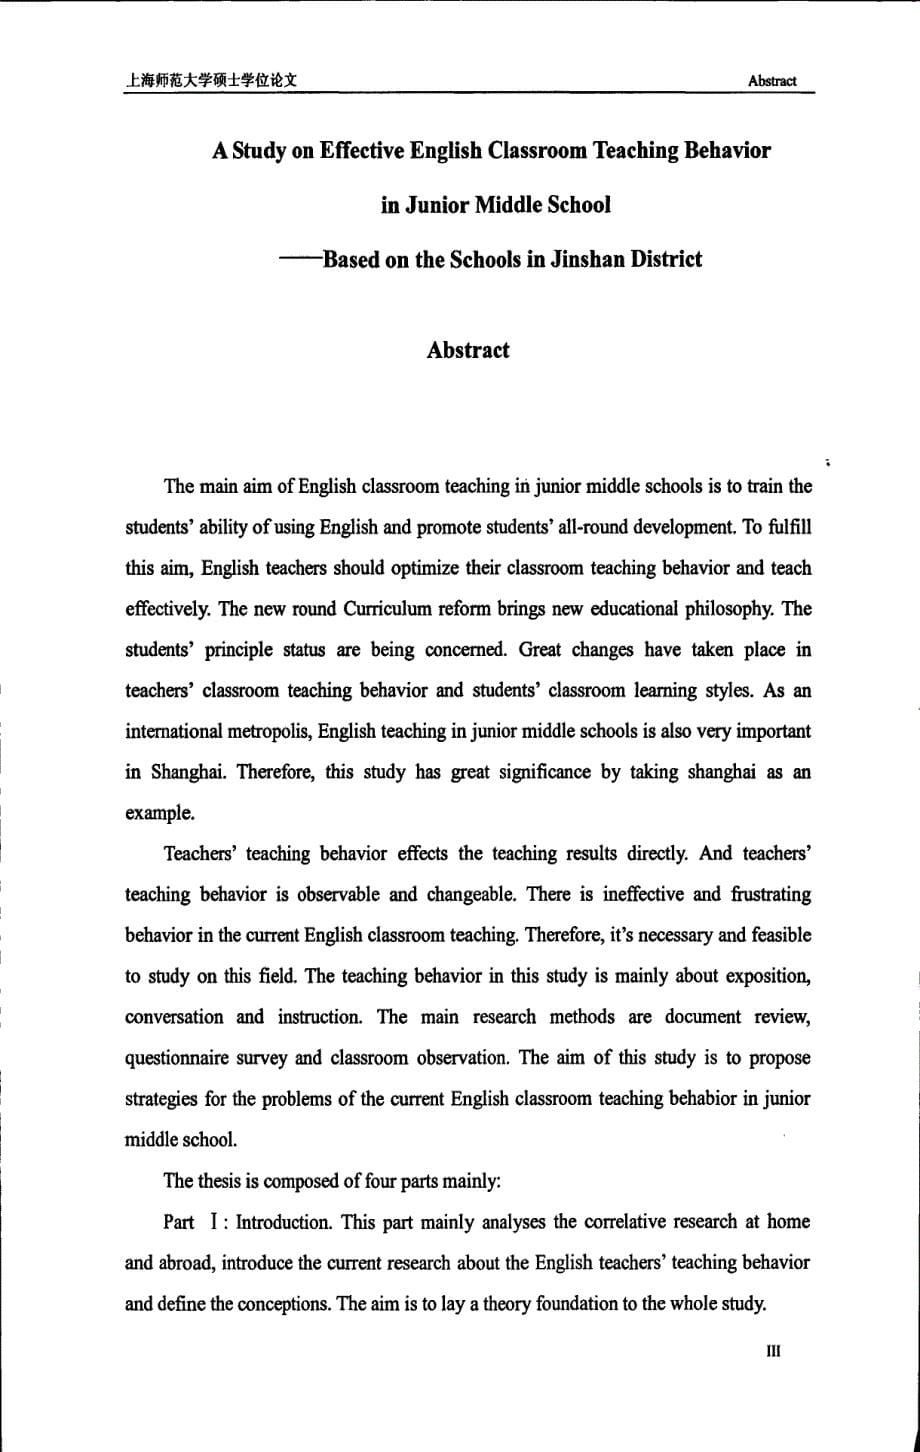 初中英语教师有效课堂教学行为研究——以金山区为例_第5页